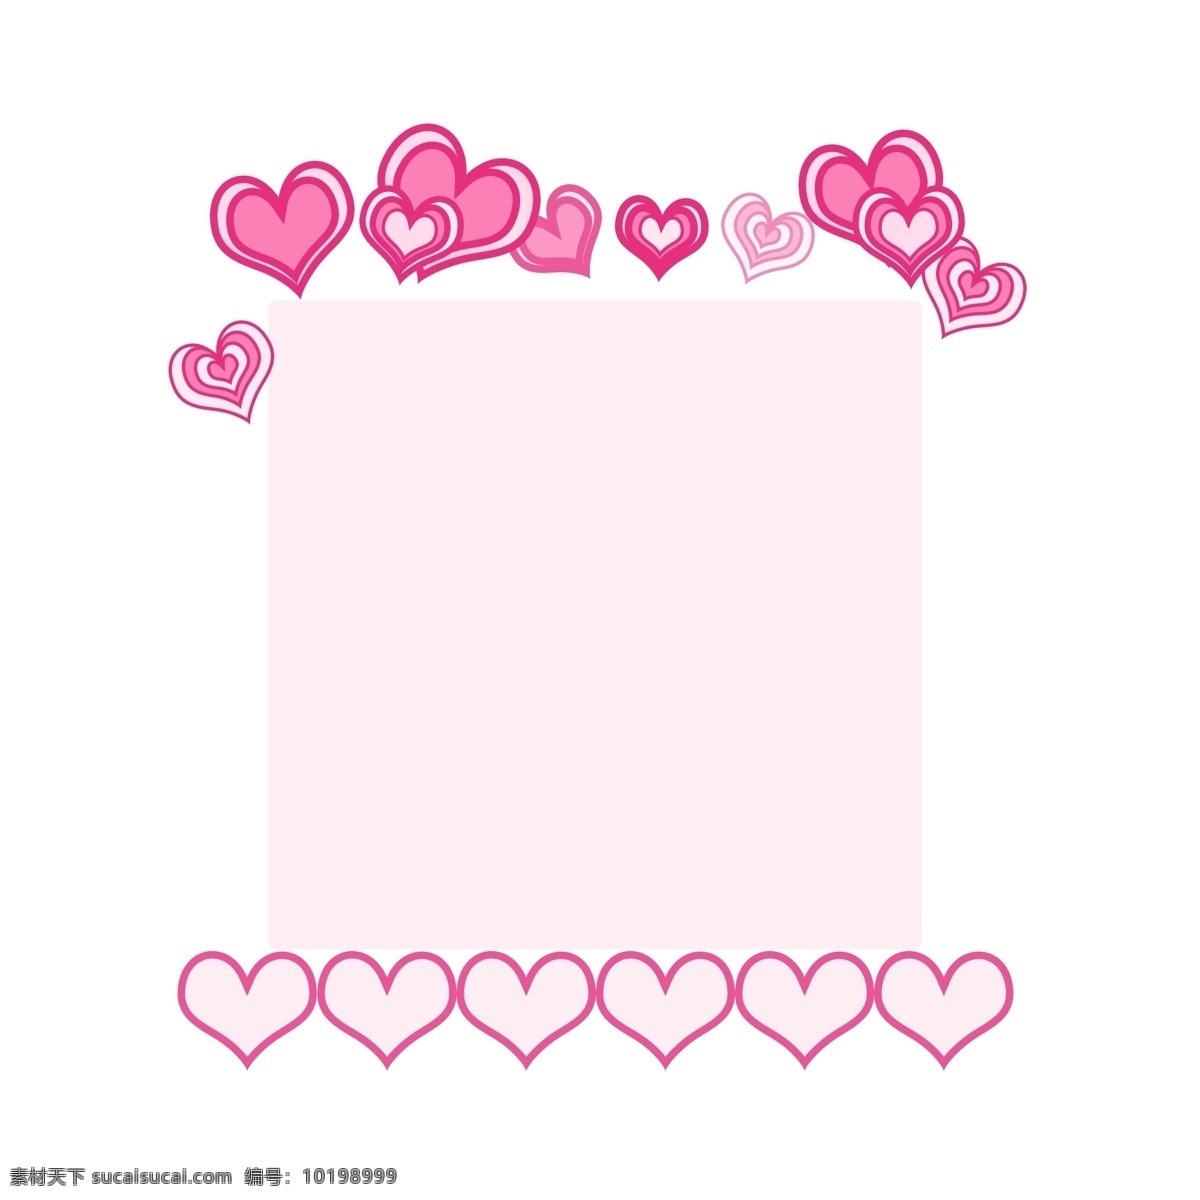 粉色 爱心 边框 装饰 粉色的边框 爱心边框 漂亮的边框 立体边框 清新边框 创意边框 边框装饰